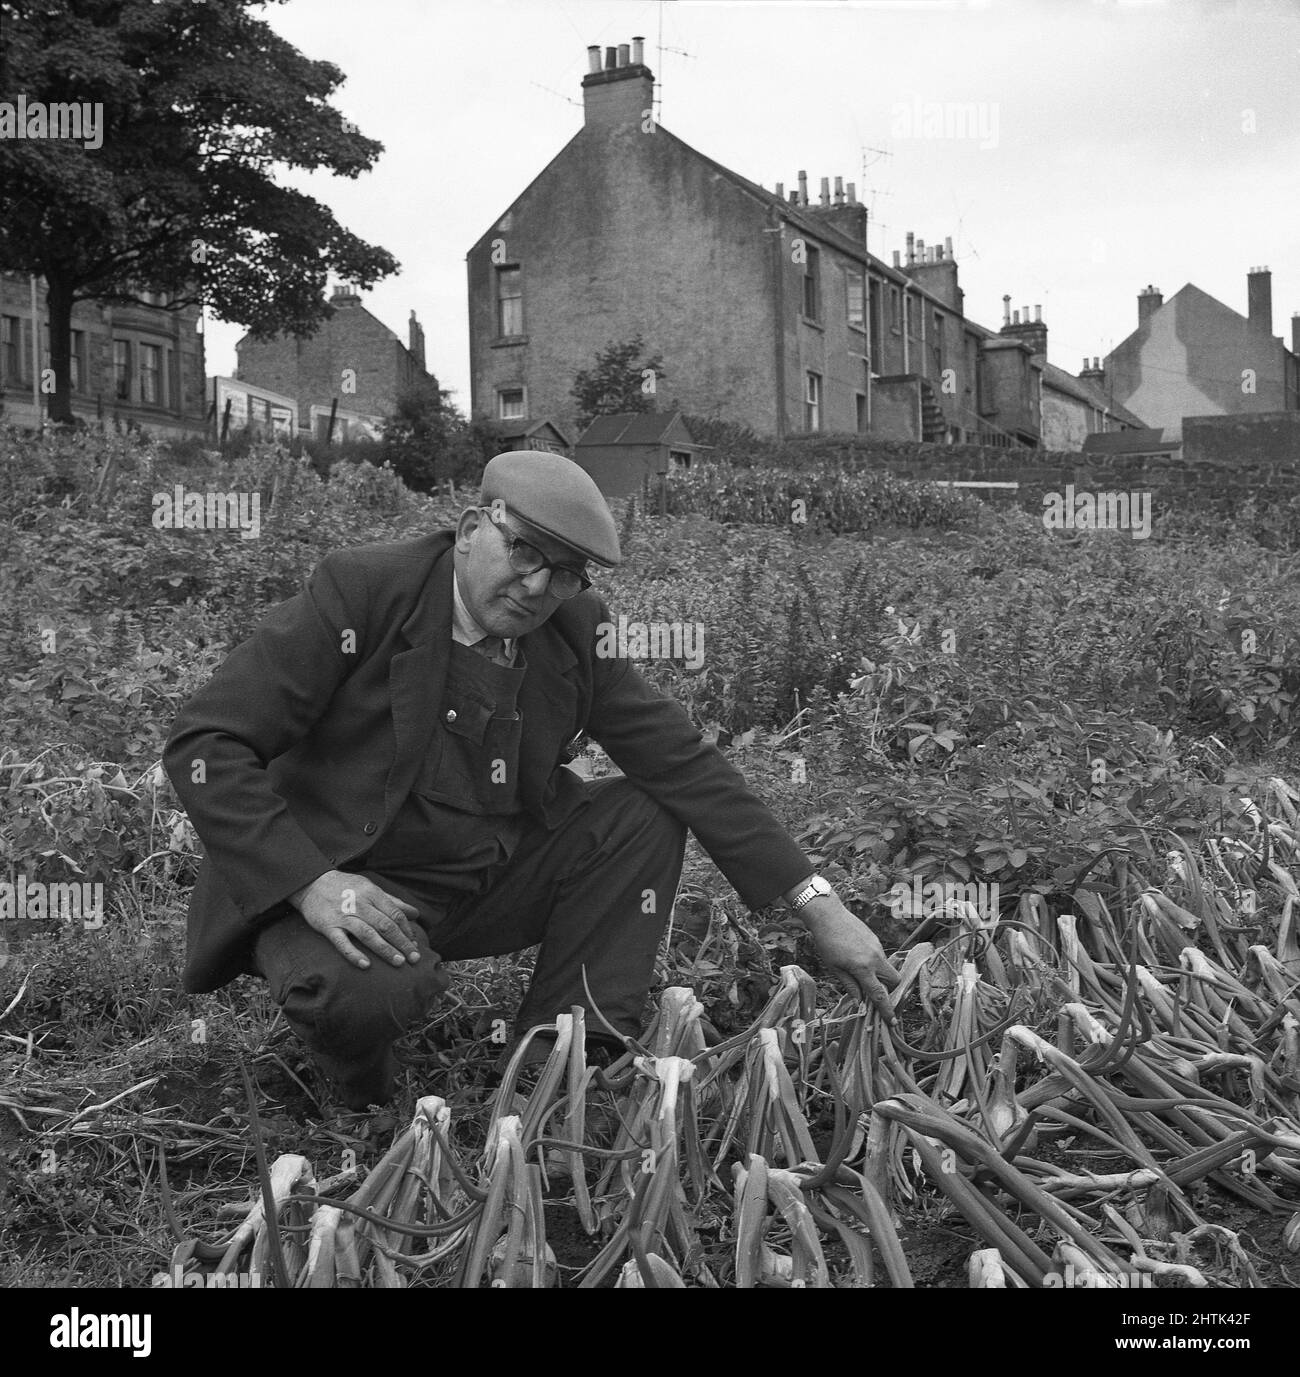 1960s, historisch, ein älterer Mann, der eine Jacke über Latzhose und eine flache Kappe trägt, kniete draußen auf einem öffentlichen Land nieder, von dem einige als Zuteilung verwendet werden, wo er Zwiebeln anbau, Schottland, Großbritannien. Als eifriger gärtner überprüft er sie, denn wenn die Spitzen der Zwiebeln natürlich zu falten beginnen, zeigt das, dass die Pflanzen reif sind und die Zwiebeln bereit zur Ernte sind. Stockfoto